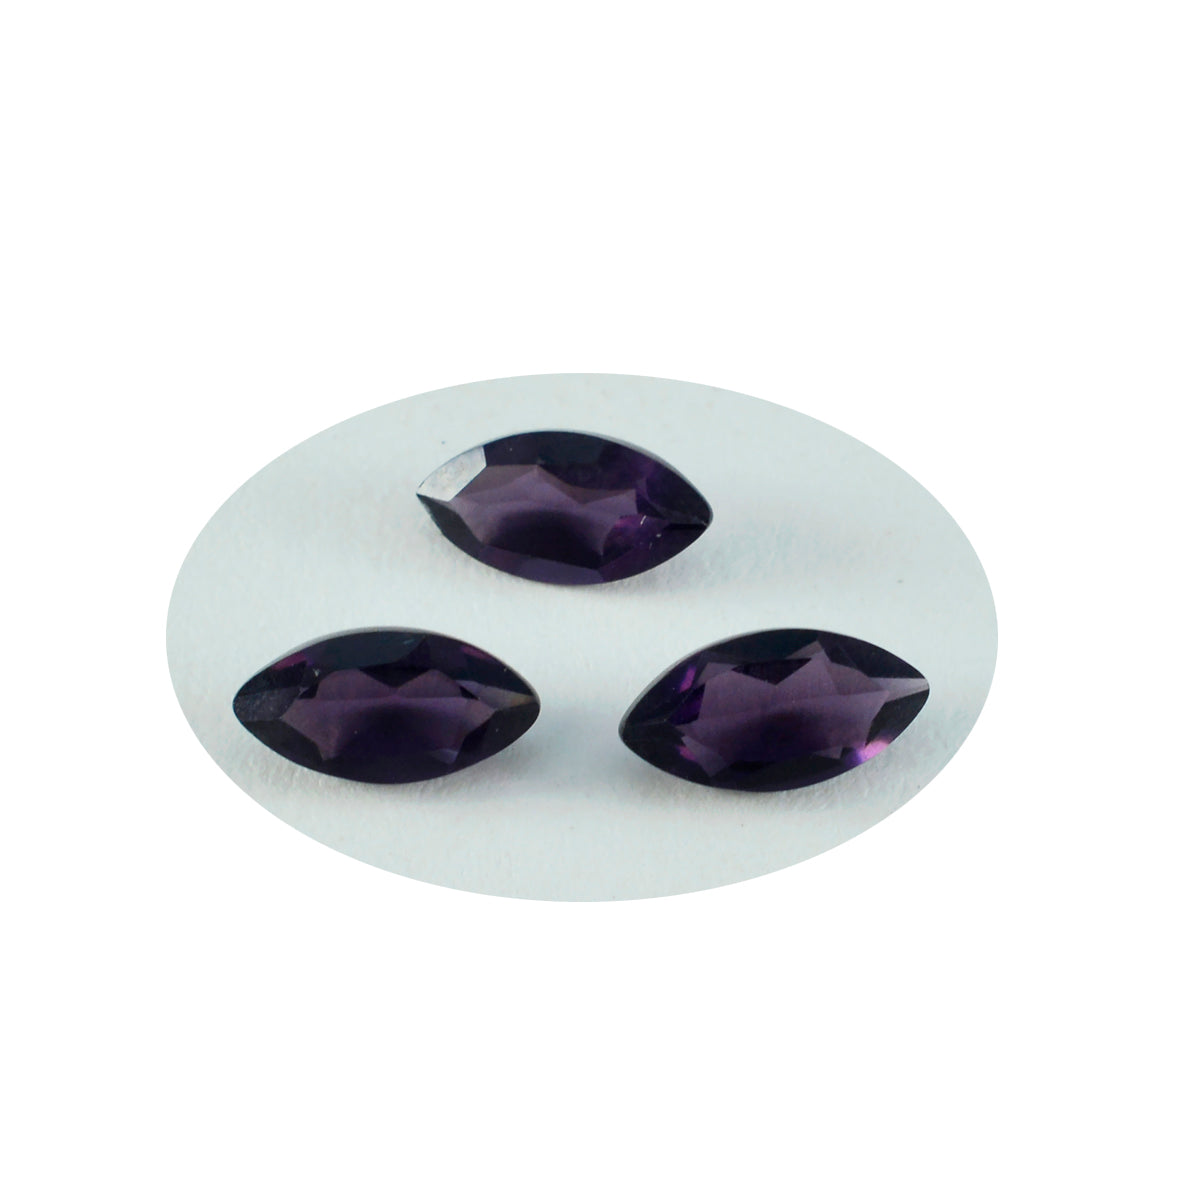 Riyogems 1 pieza de amatista púrpura CZ facetada 3x5mm forma ovalada piedra suelta de calidad encantadora